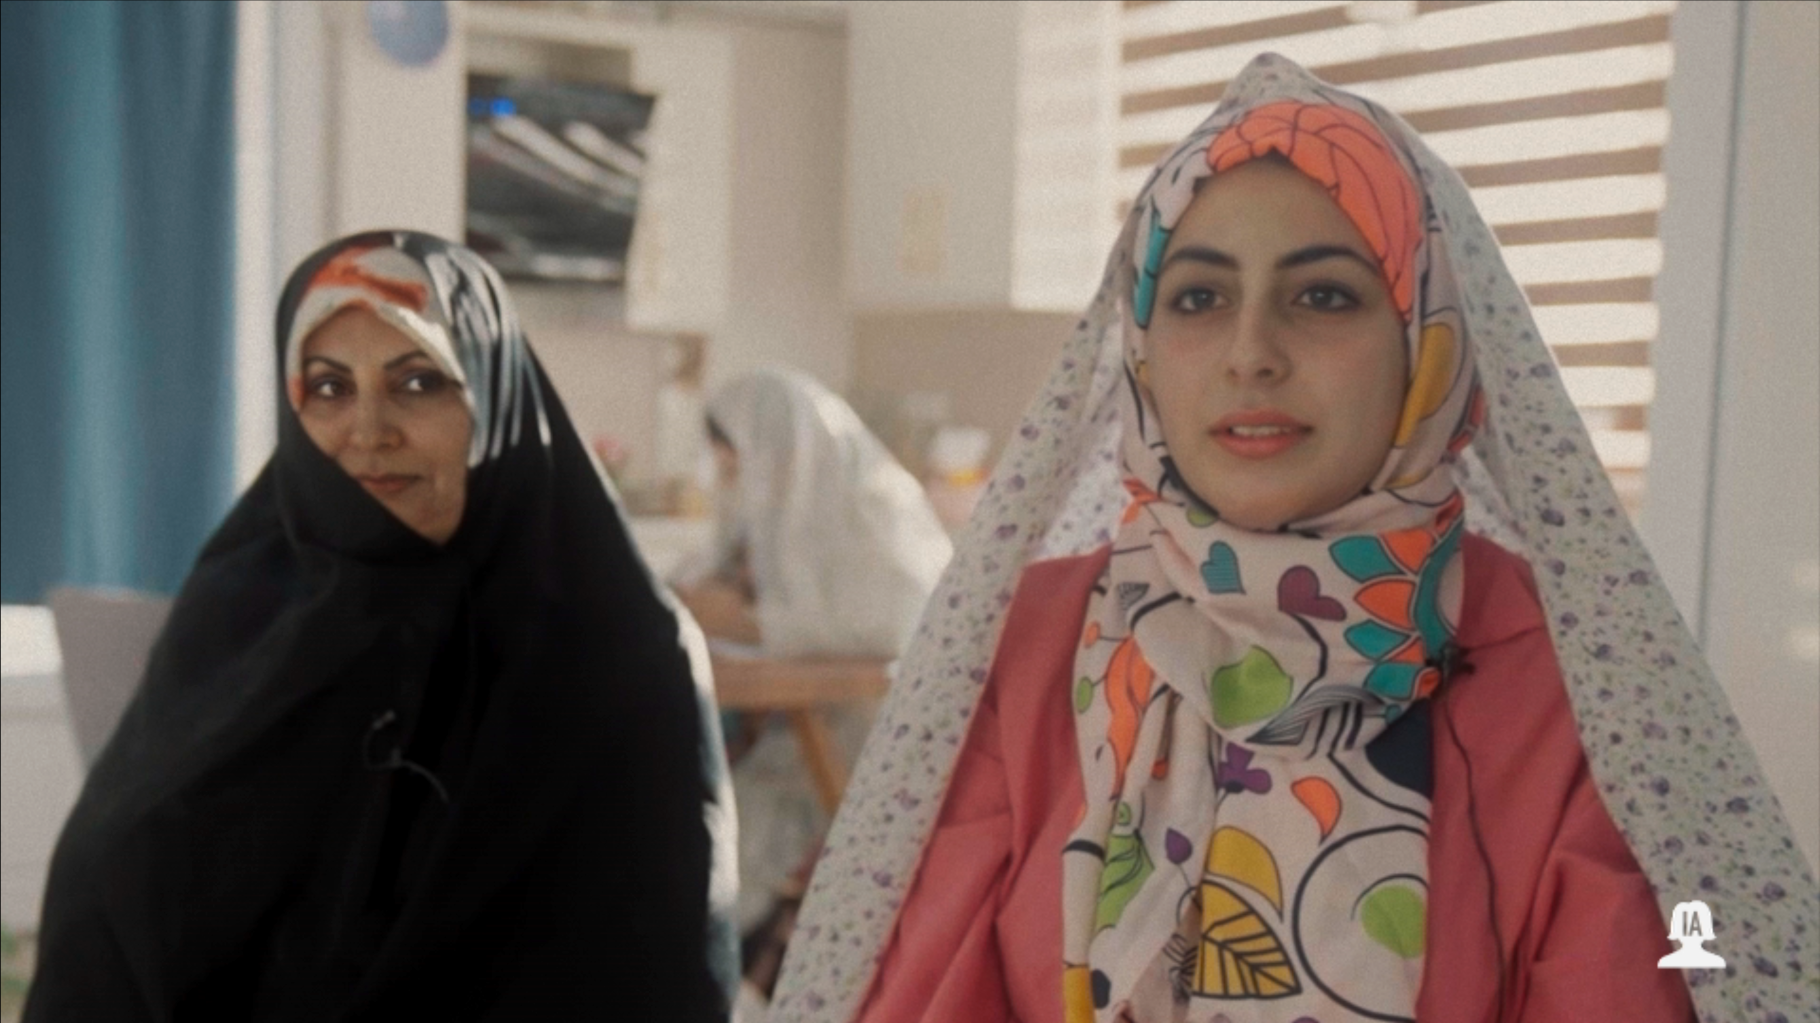   Dans ce documentaire de France 5 sur l’Iran, des visages ont été générés par IA, sa réalisatrice explique pourquoi  